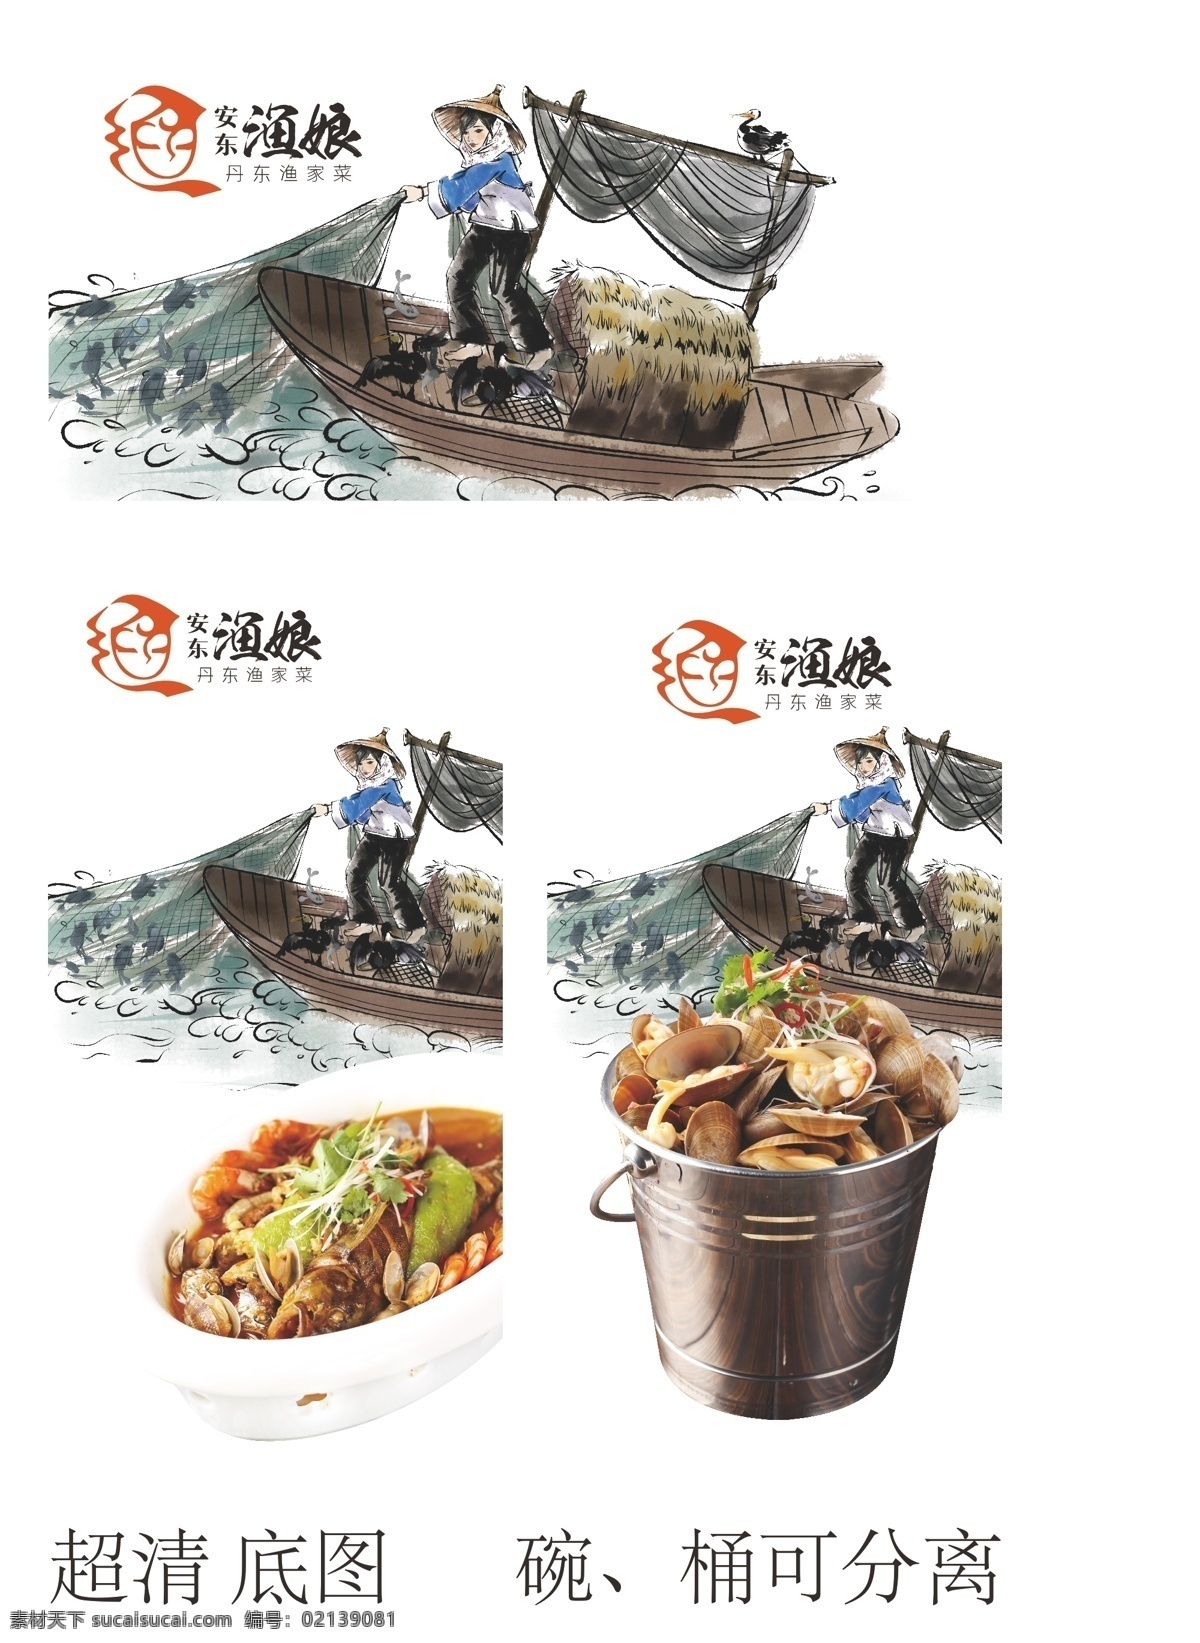 高清渔民图 生蚝 蛤蜊 海鲜 美食 铁桶 食欲 农民 打鱼 渔船 渔网 卡通人物 水墨风格